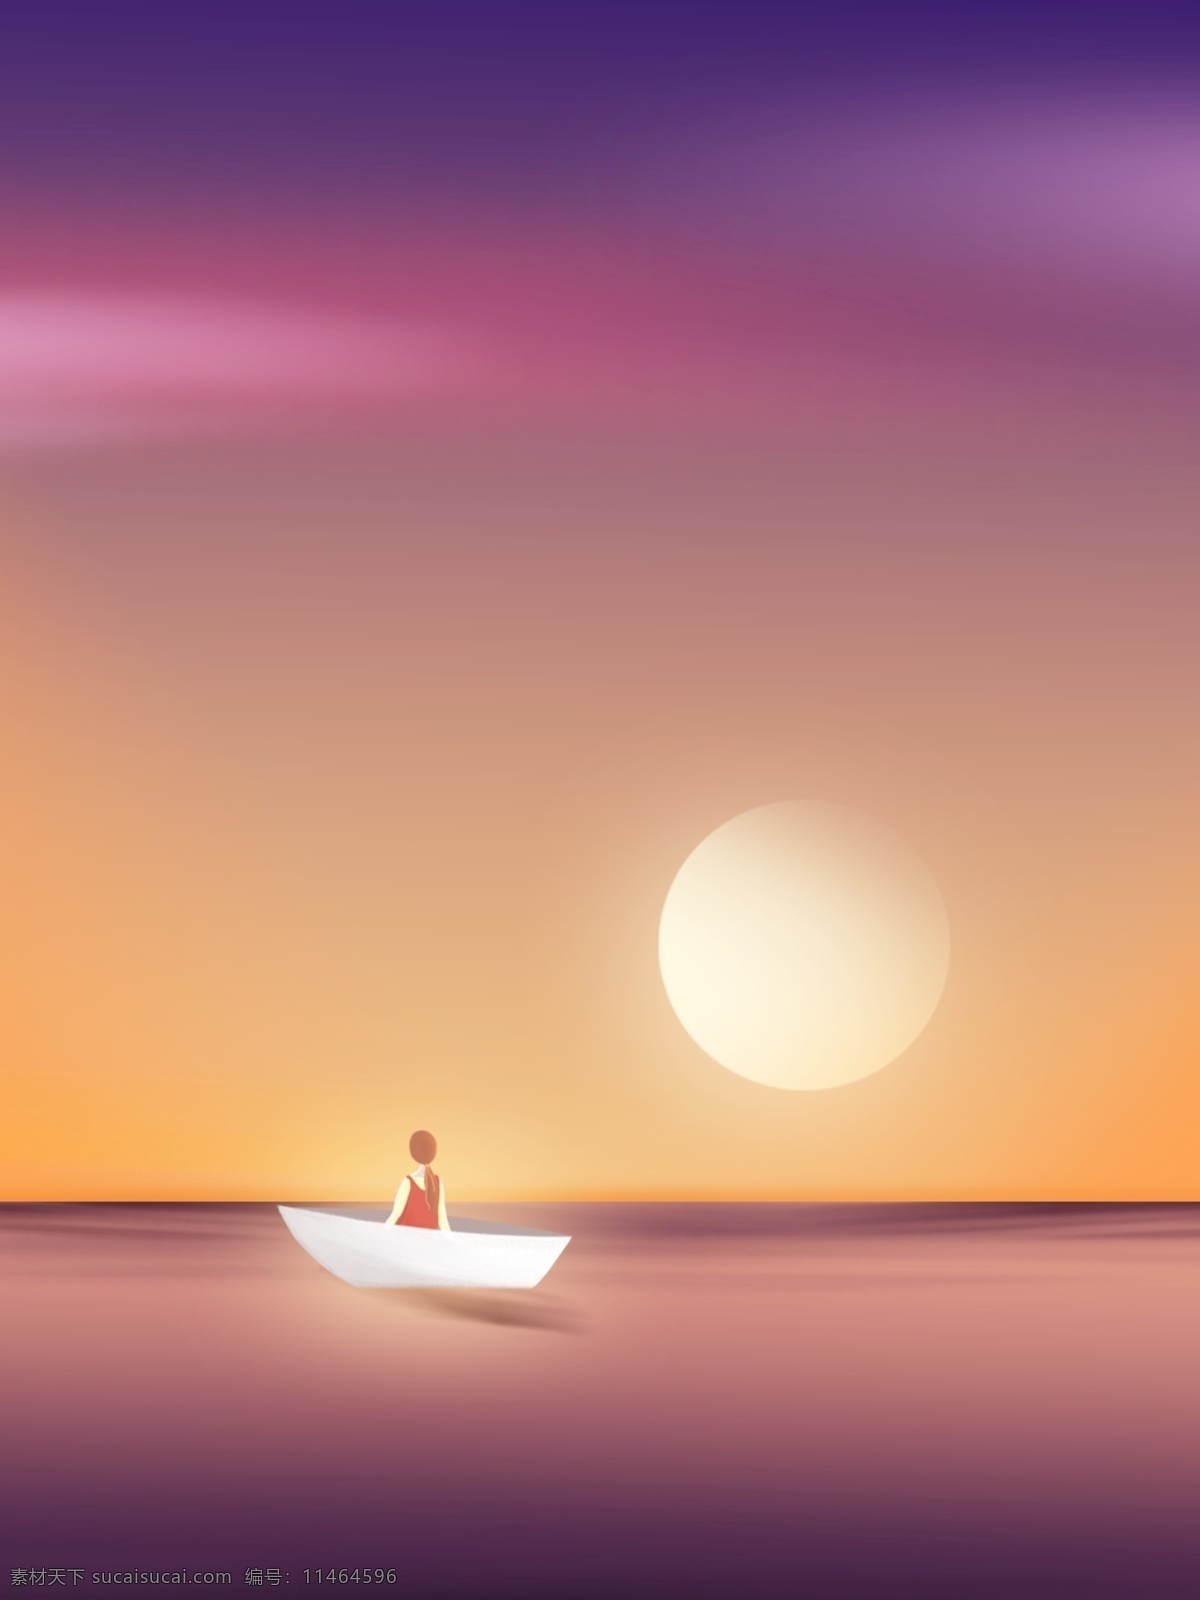 紫色 唯美 夕阳 小船 背景 梦幻 晚霞 海平面背景